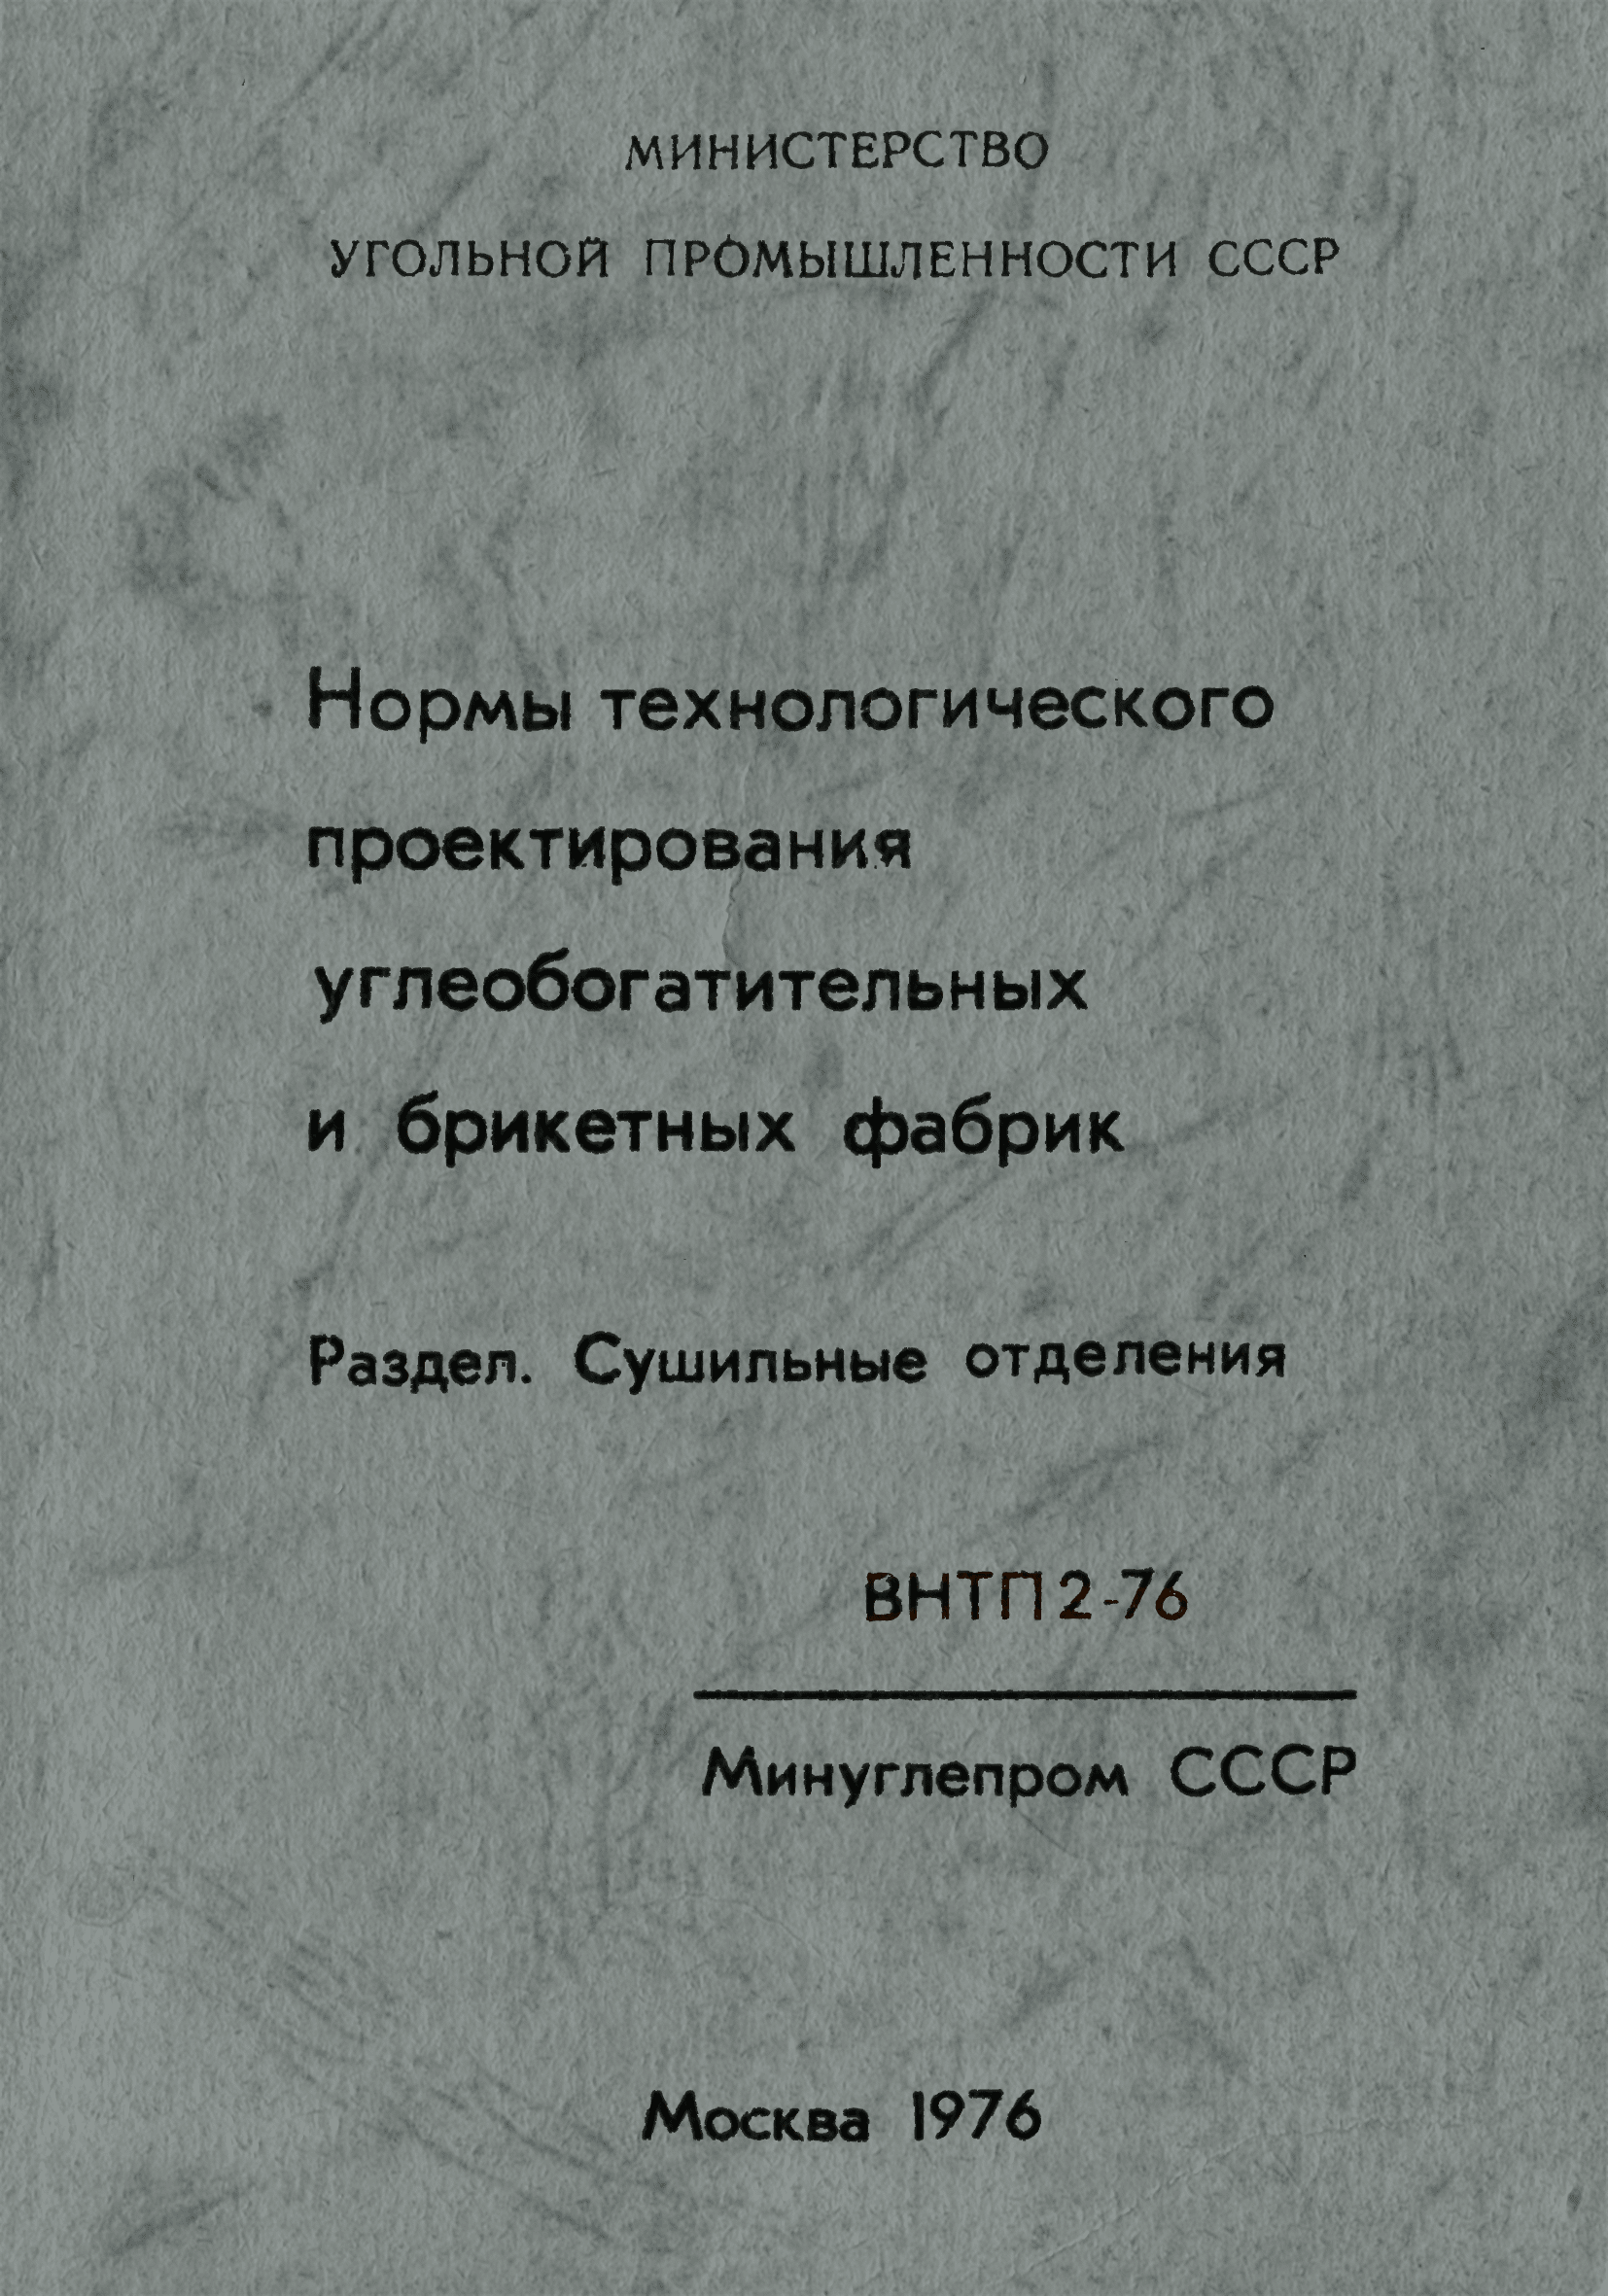 ВНТП 2-76